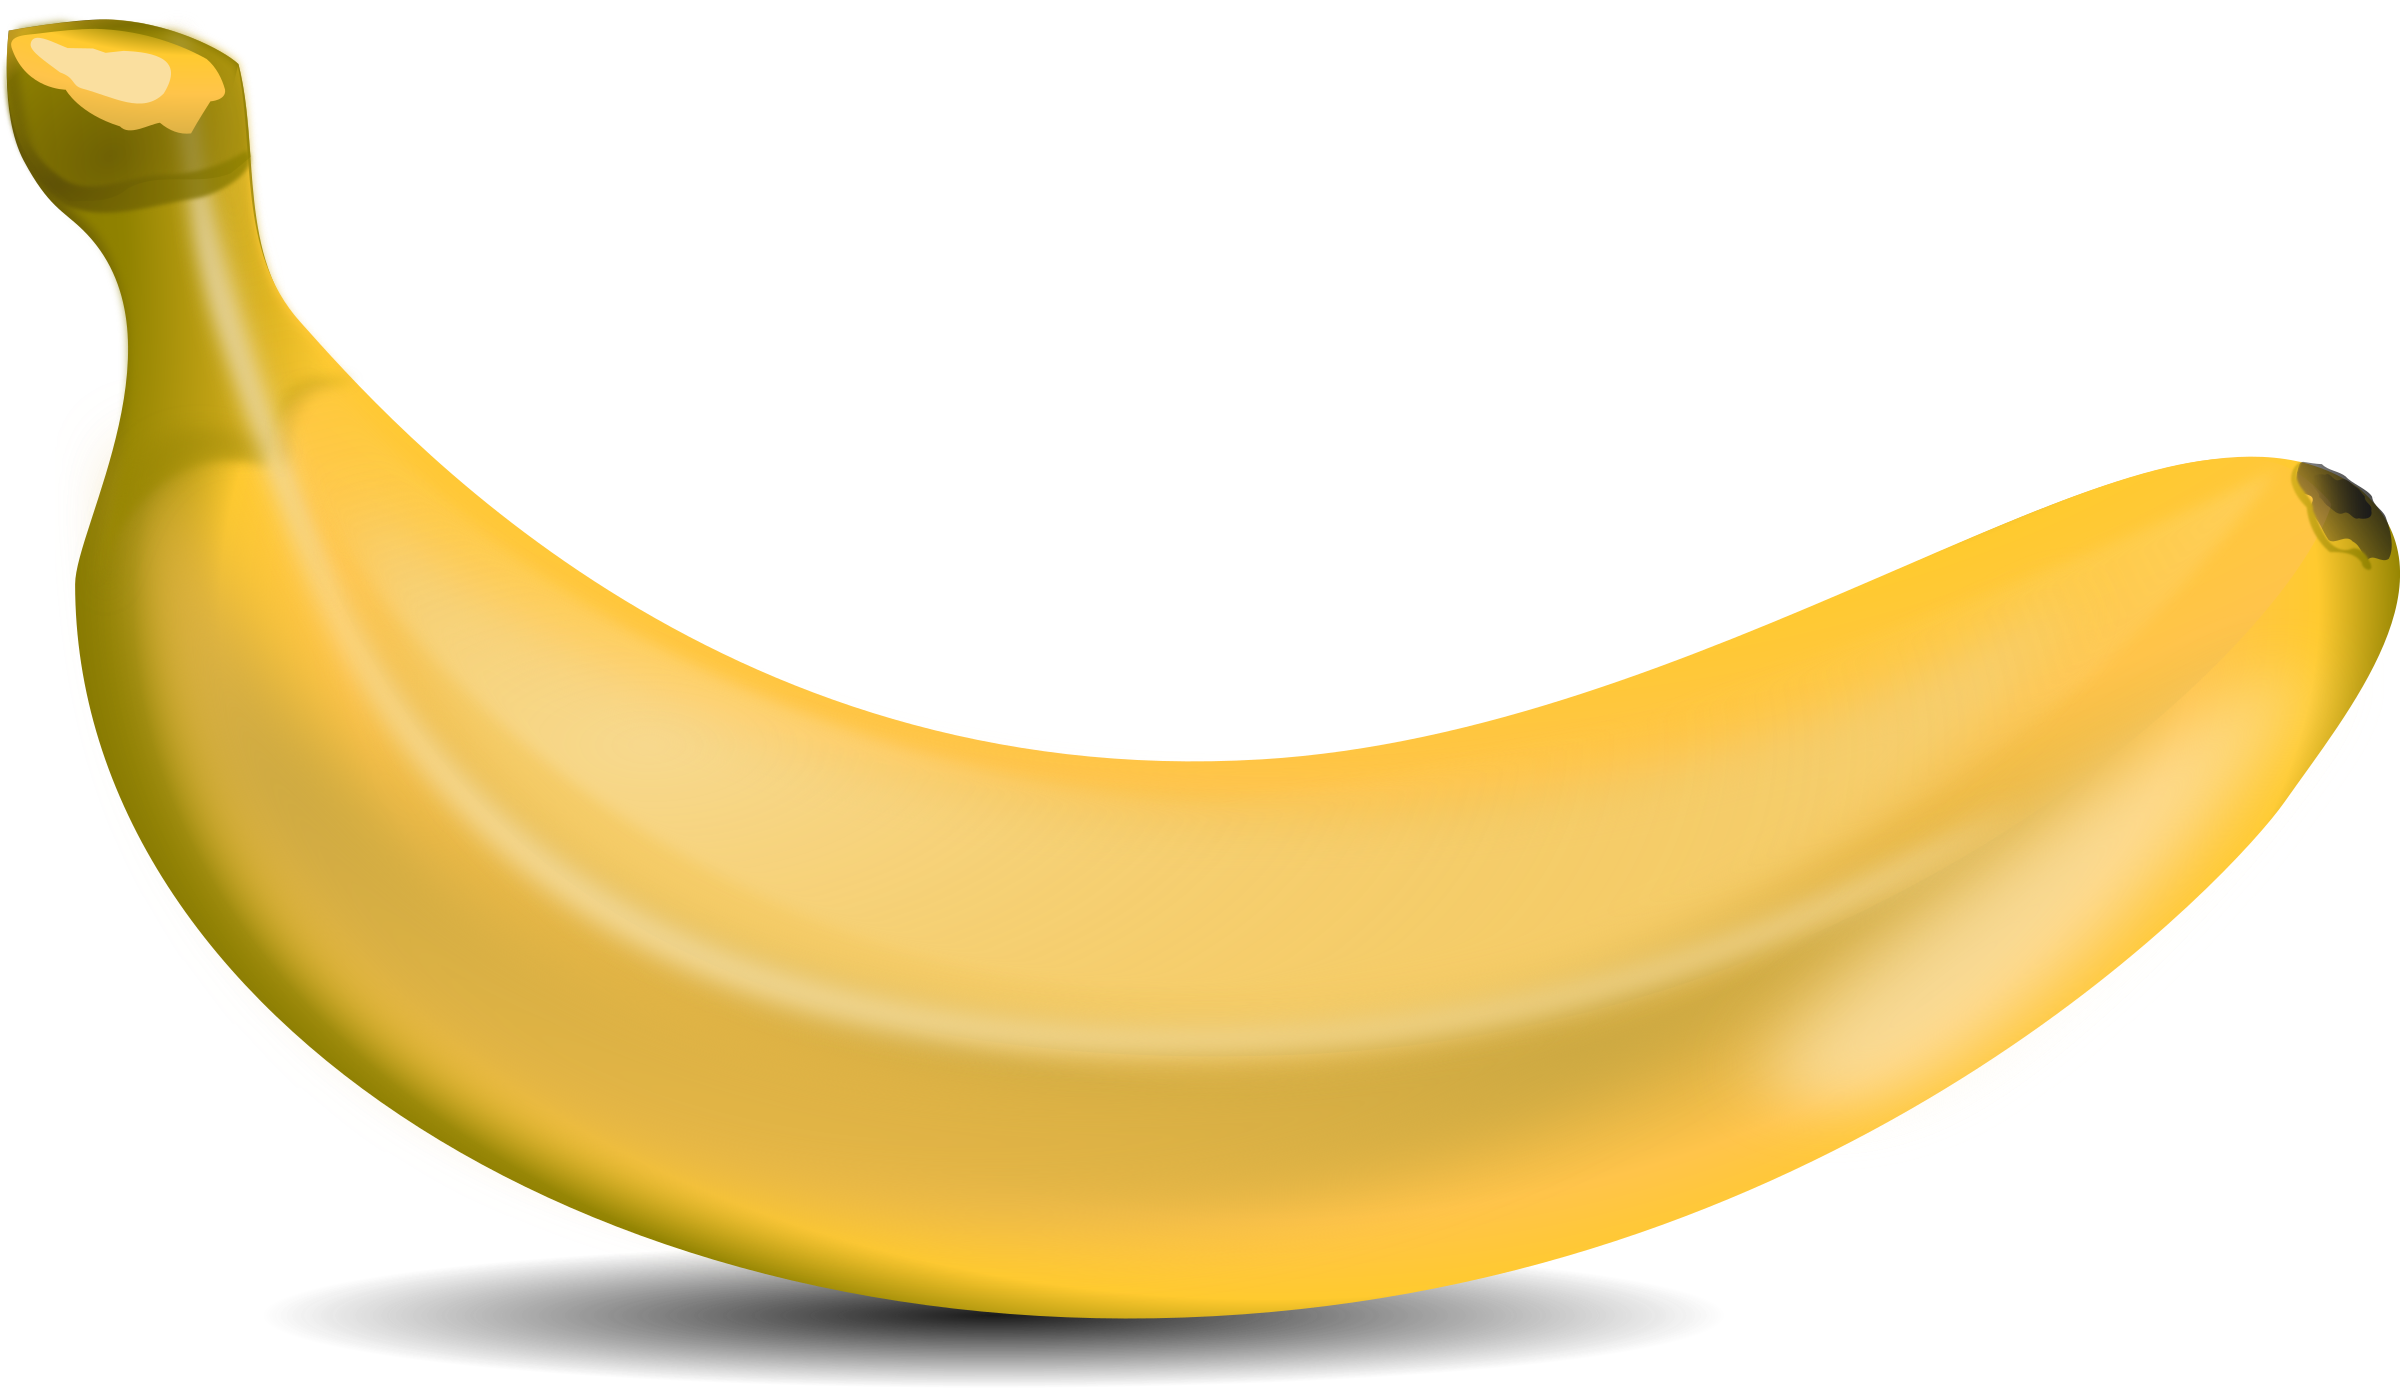 Banana Clip Art Free PNG Image